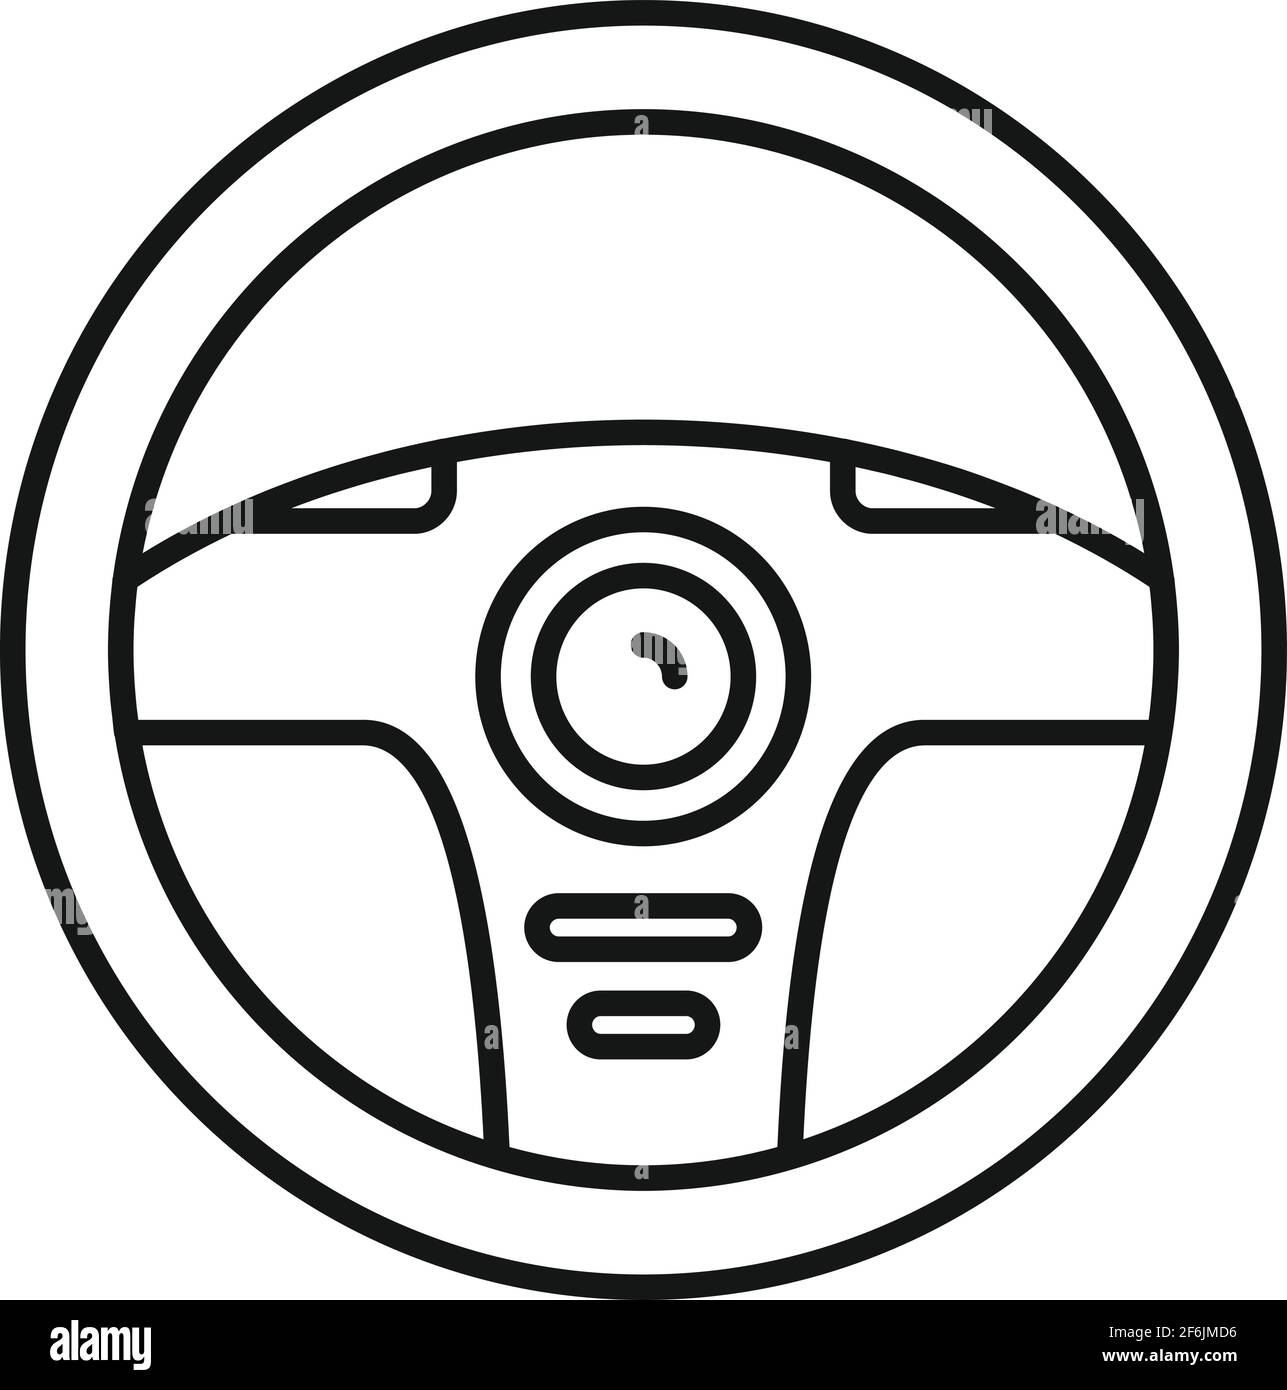 Auto lenkrad symbol Schwarzweiß-Stockfotos und -bilder - Alamy